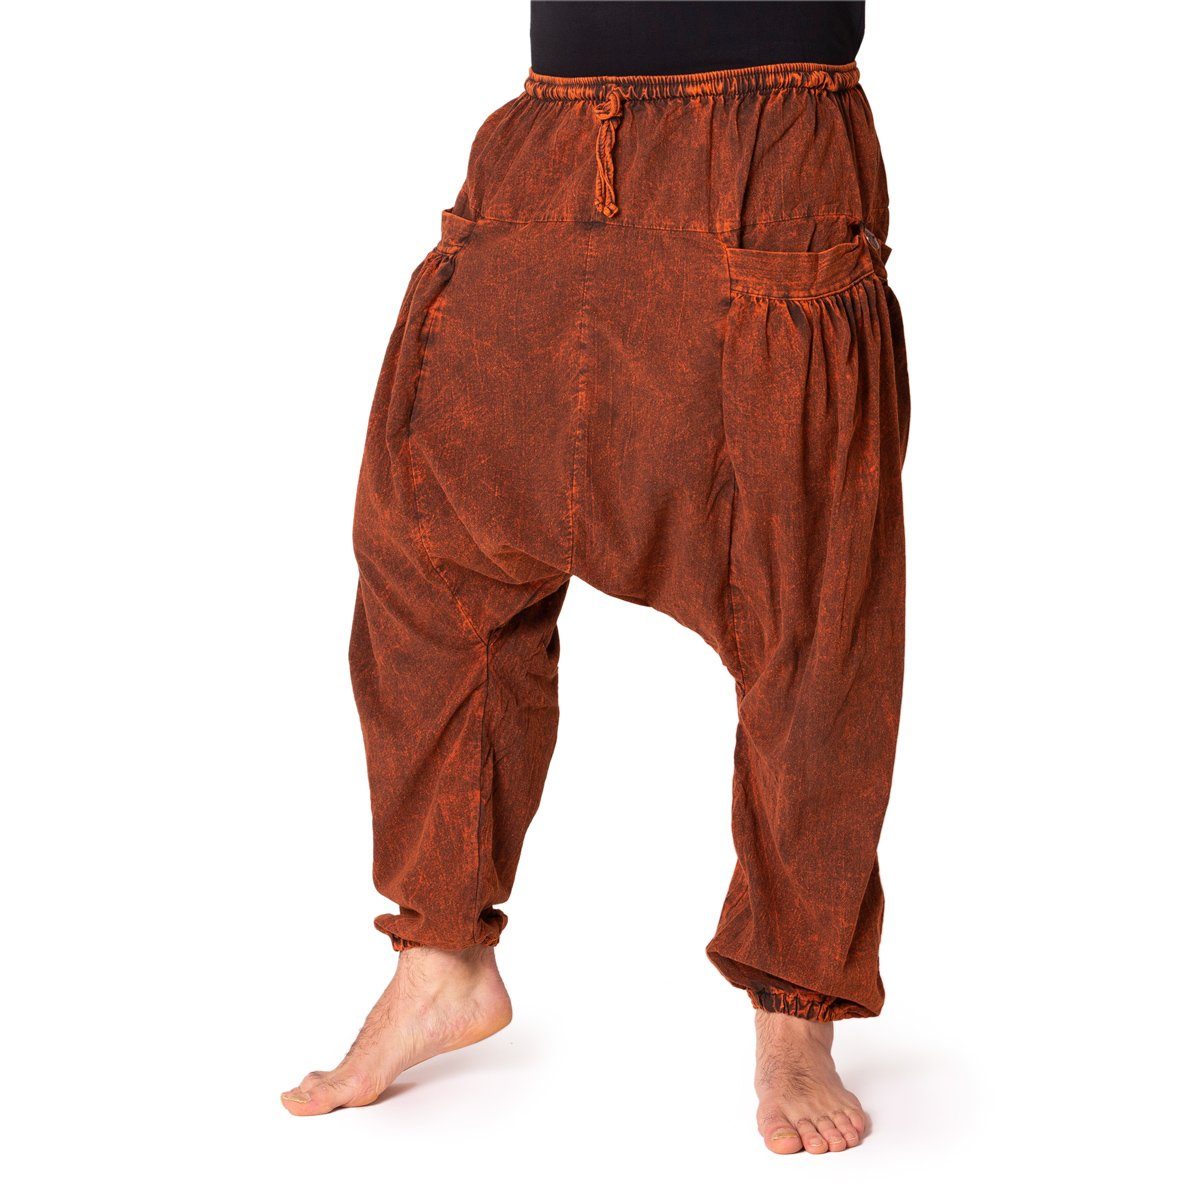 PANASIAM Wellnesshose Chillhose stonewashed im Aladin-Style aus 100% Baumwolle locker geschnittene Boho-Hose mit Taschen Freizeithose für Damen und Herren rostrot